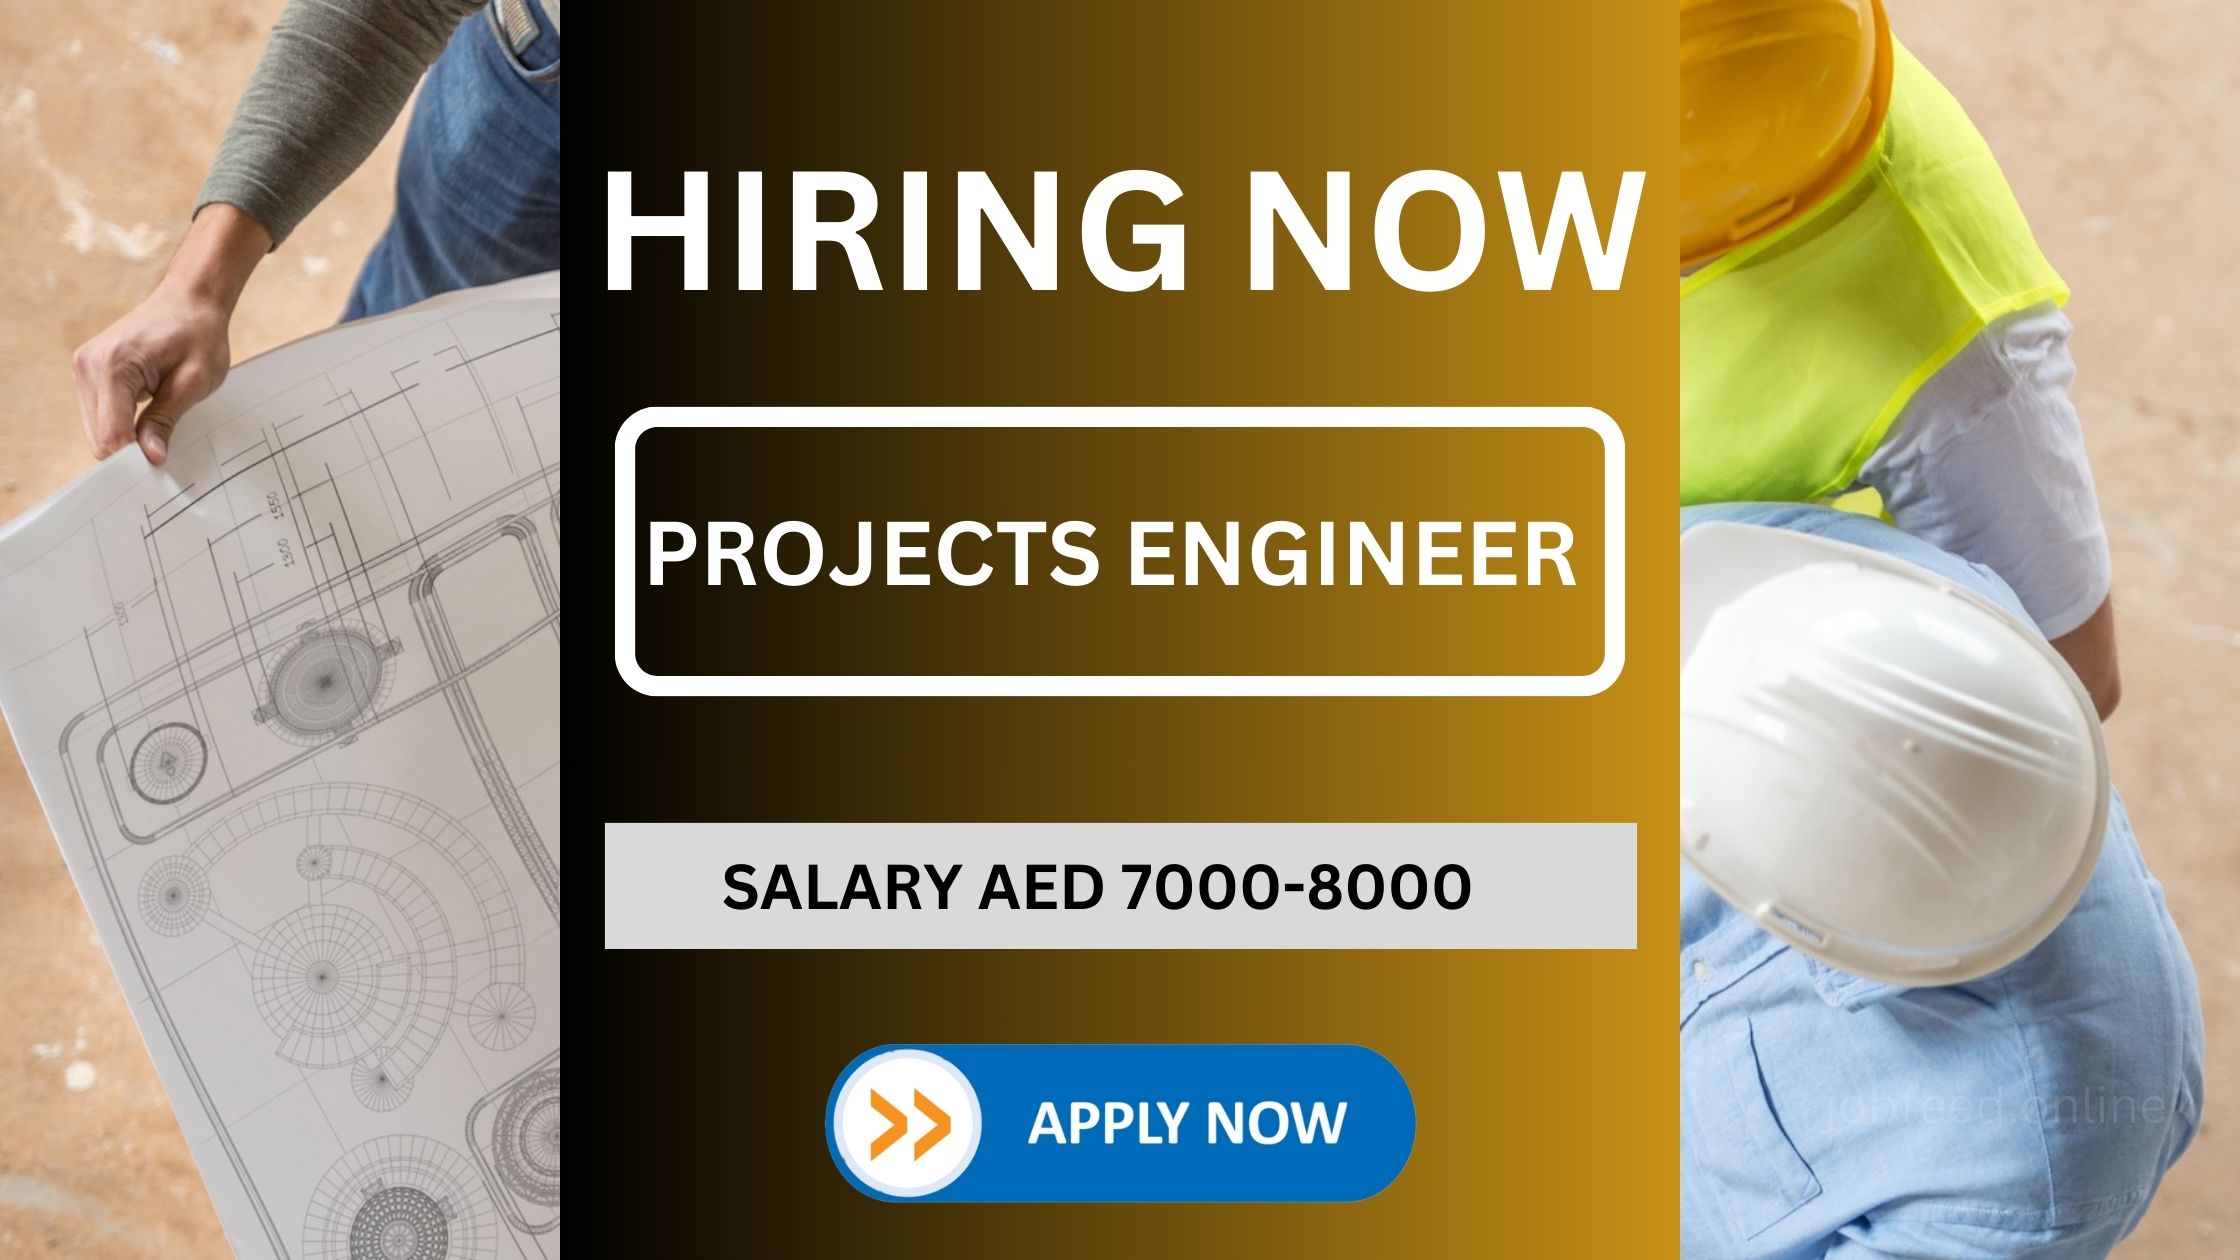 النجارون الفوريون فقط: وظيفة مهندس مشاريع (مدني) في دبي | الراتب: 7000-8000 درهم